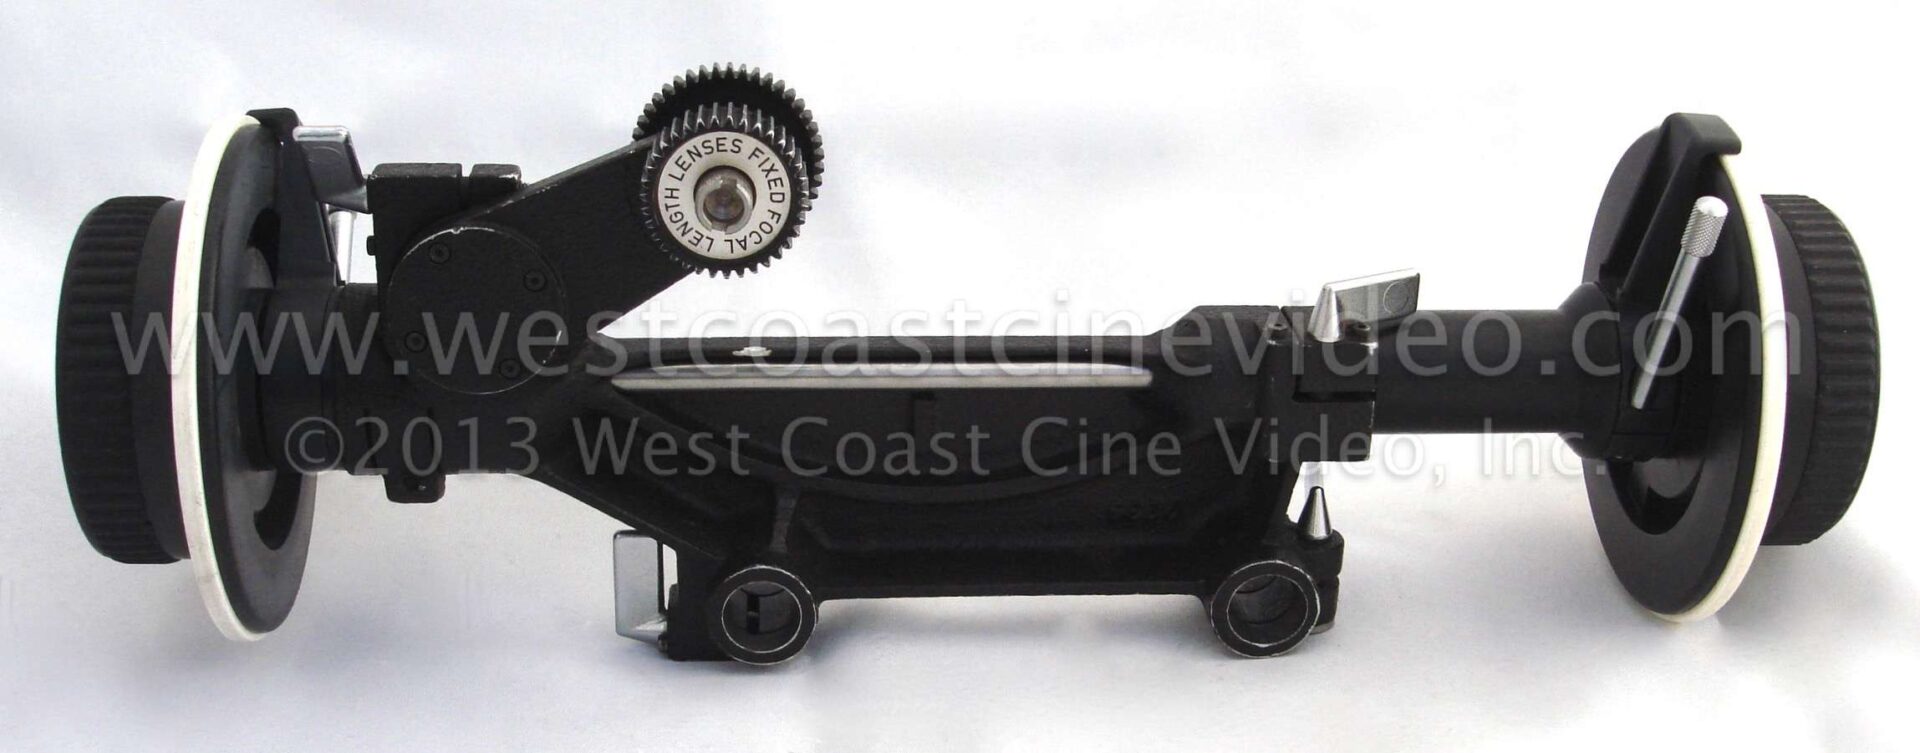 West Coast Cine Video, Inc